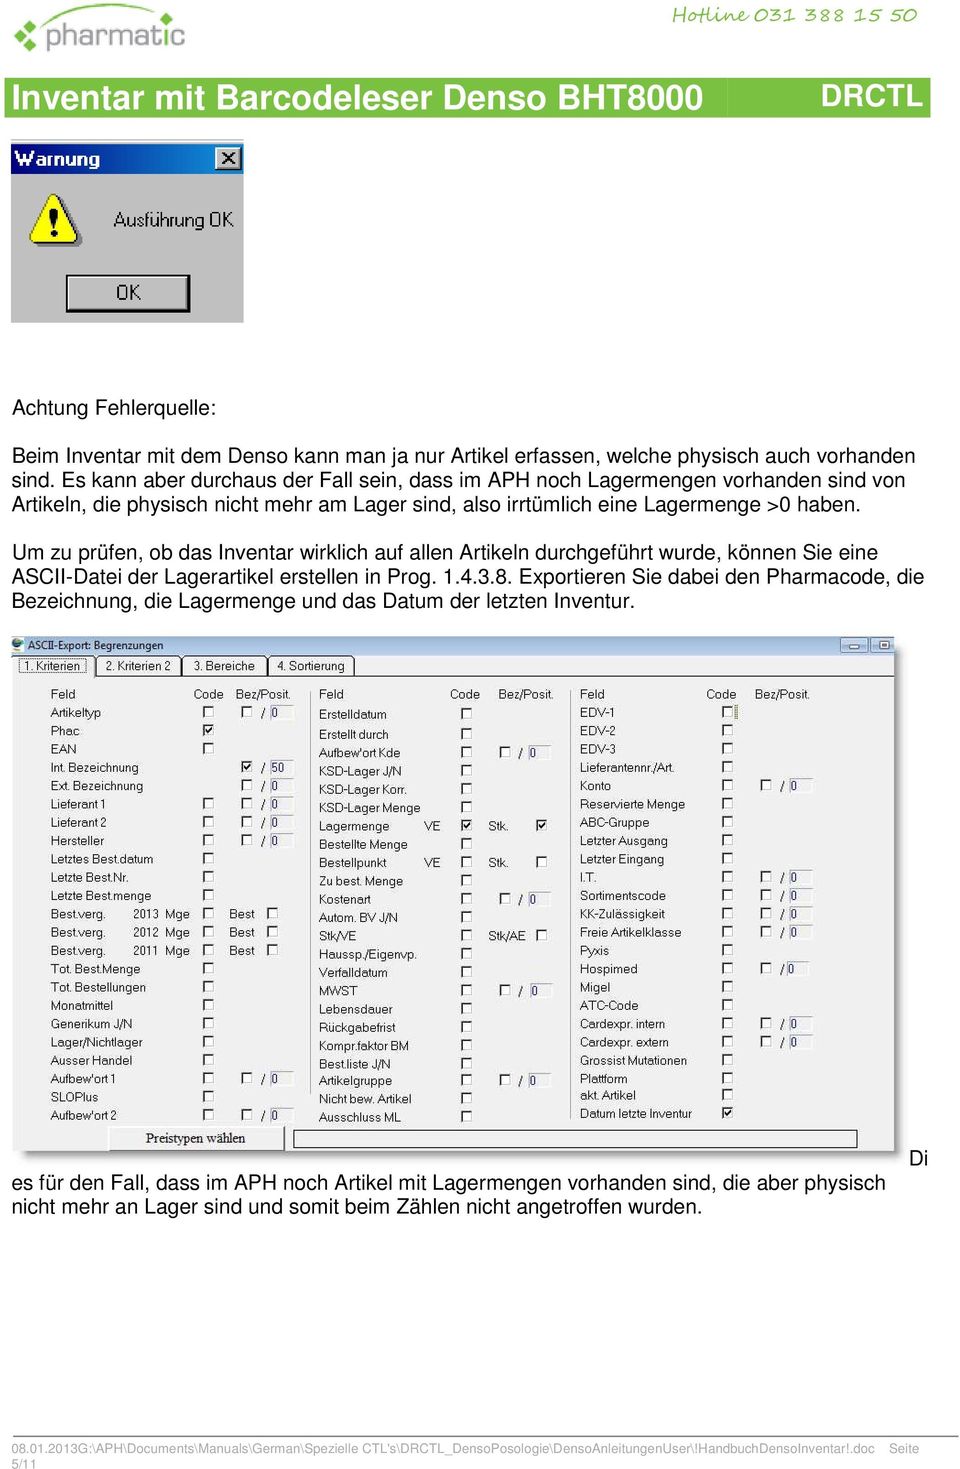 Um zu prüfen, ob das Inventar wirklich auf allen Artikeln durchgeführt wurde, können Sie eine ASCII-Datei der Lagerartikel erstellen in Prog. 1.4.3.8.